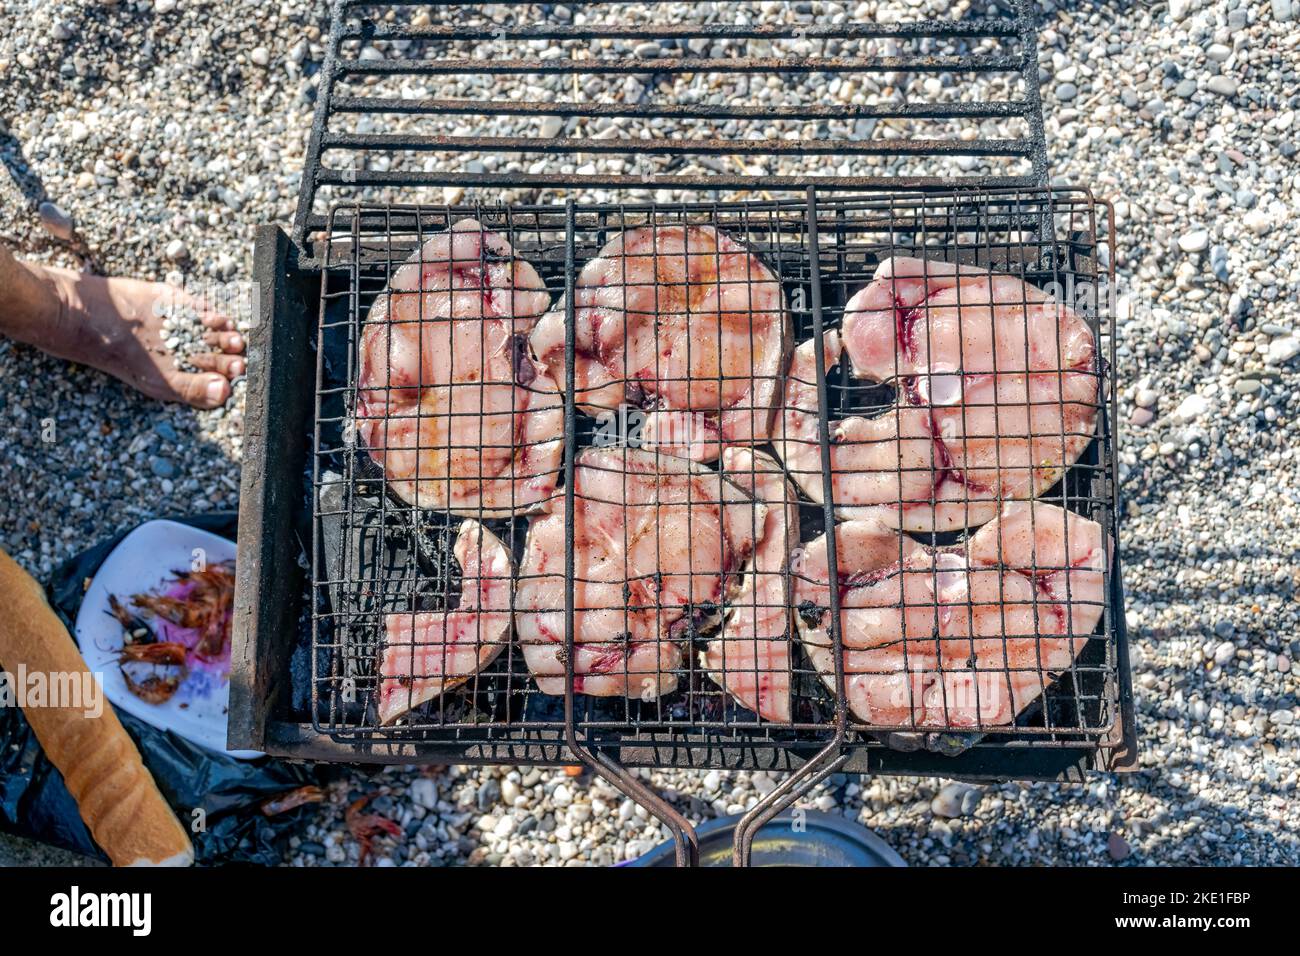 Vue aérienne de tranches d'espadon grillées sur un barbecue, un pain, une assiette de crevettes et un pied avec des galets de plage sur fond flou. Banque D'Images